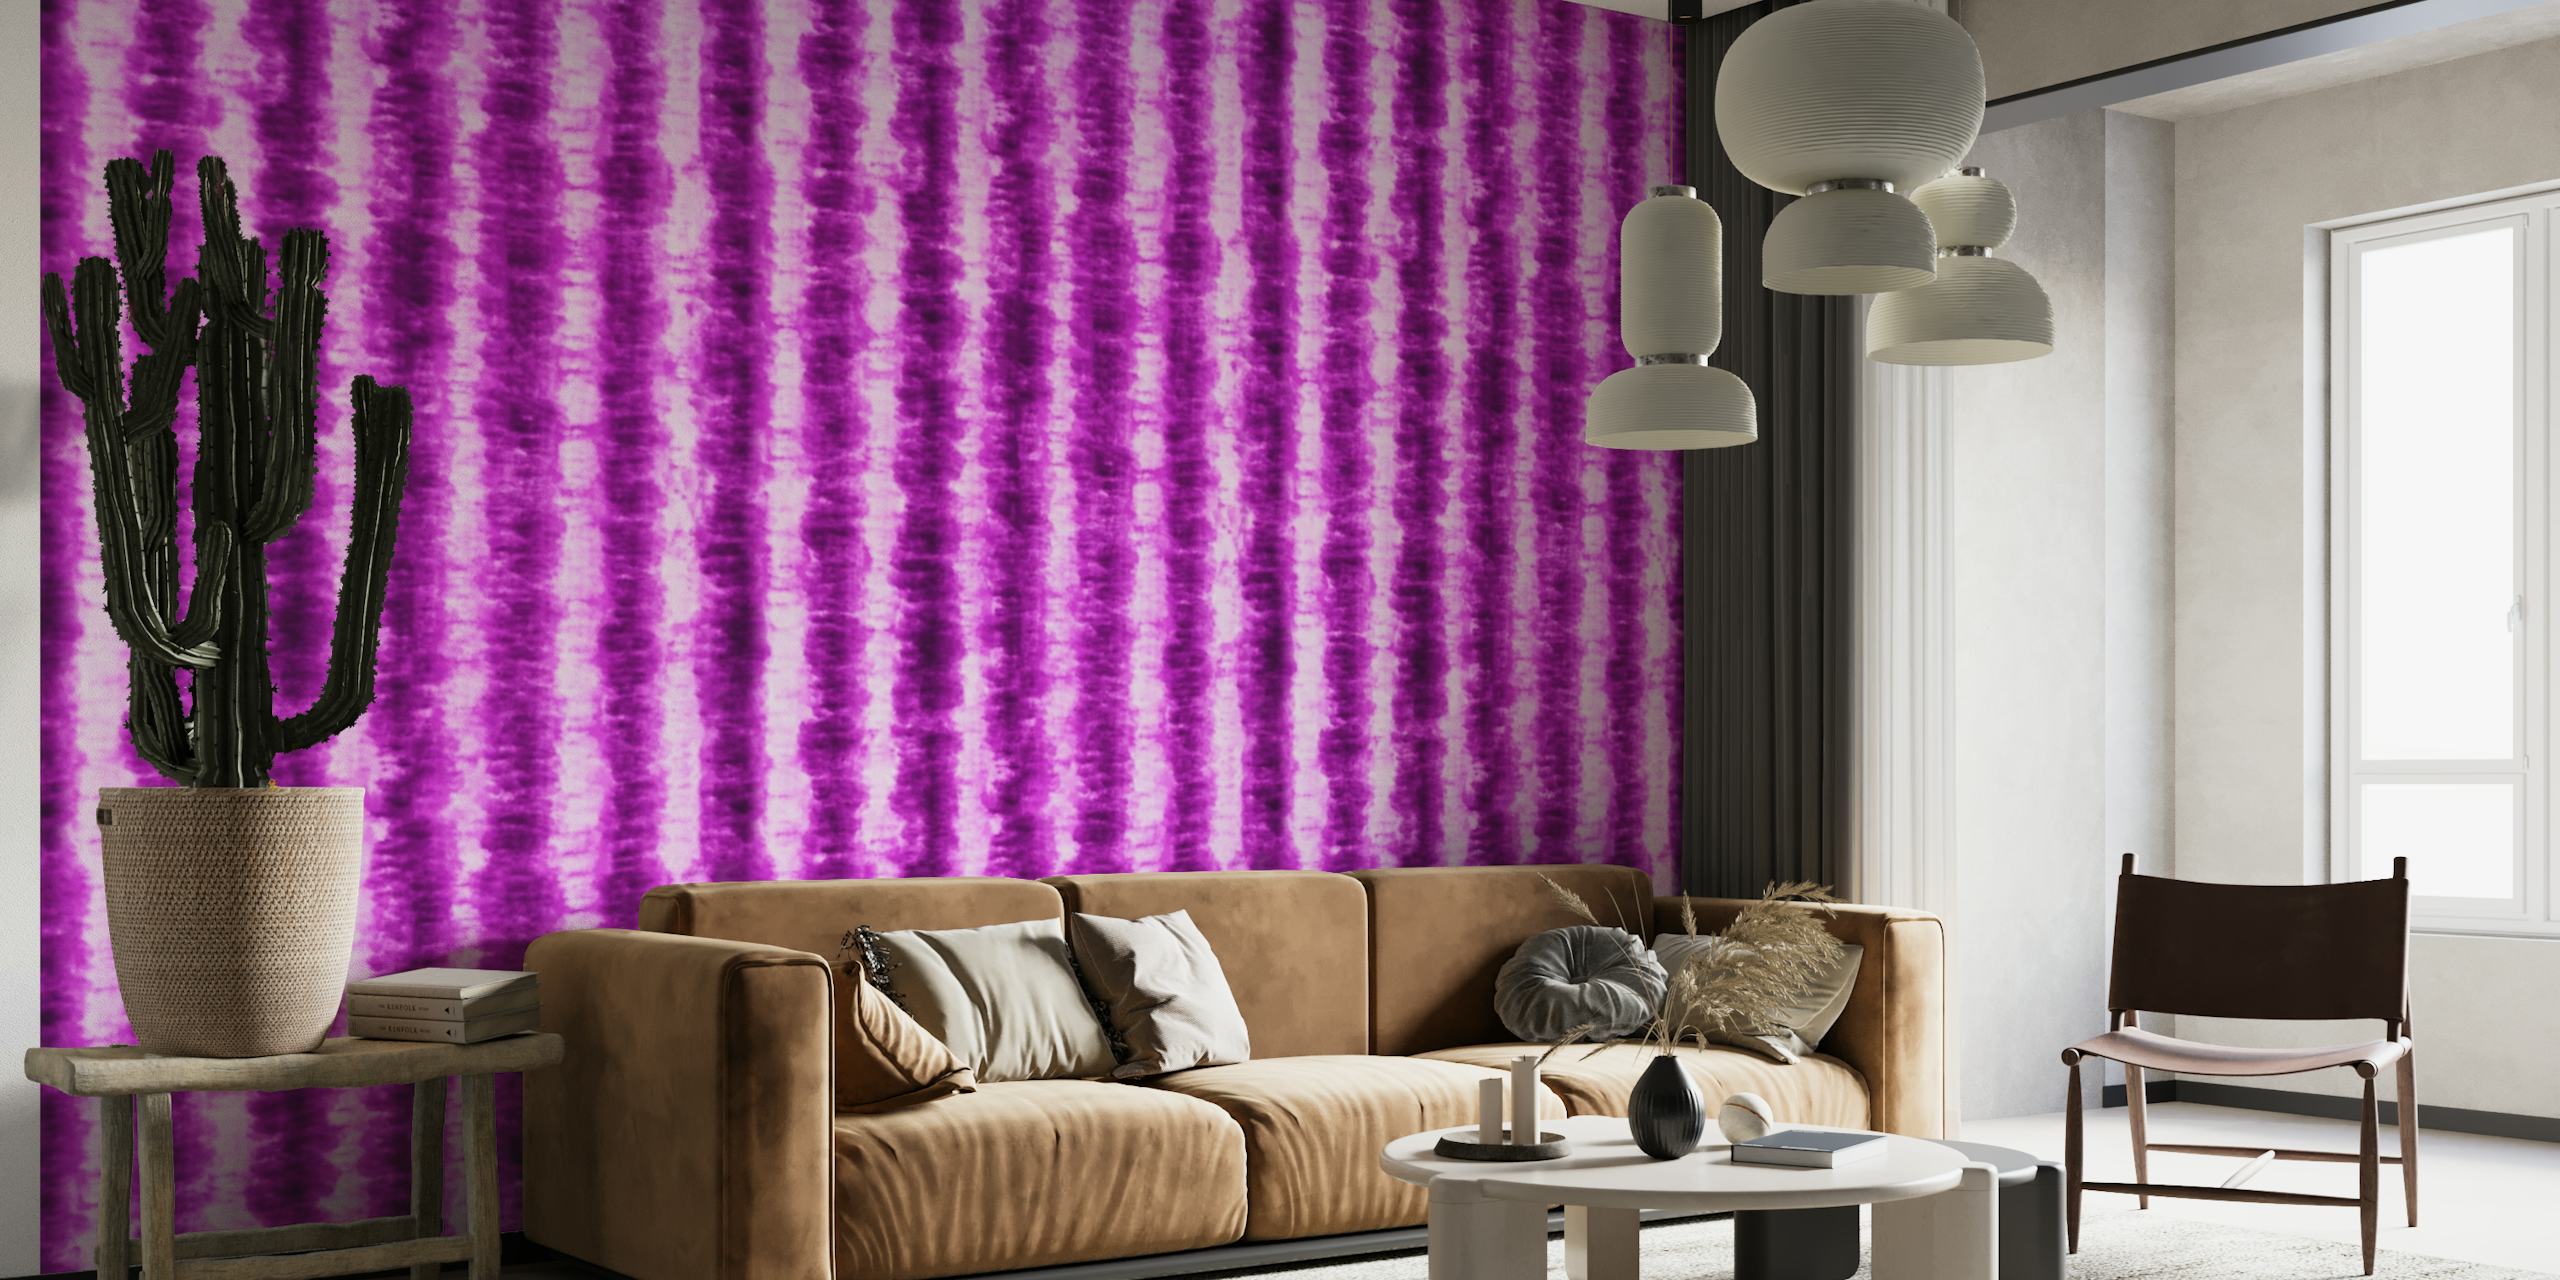 Vibrerande lila tie-dye mönster tapet från Happywall, perfekt för eklektisk heminredning.